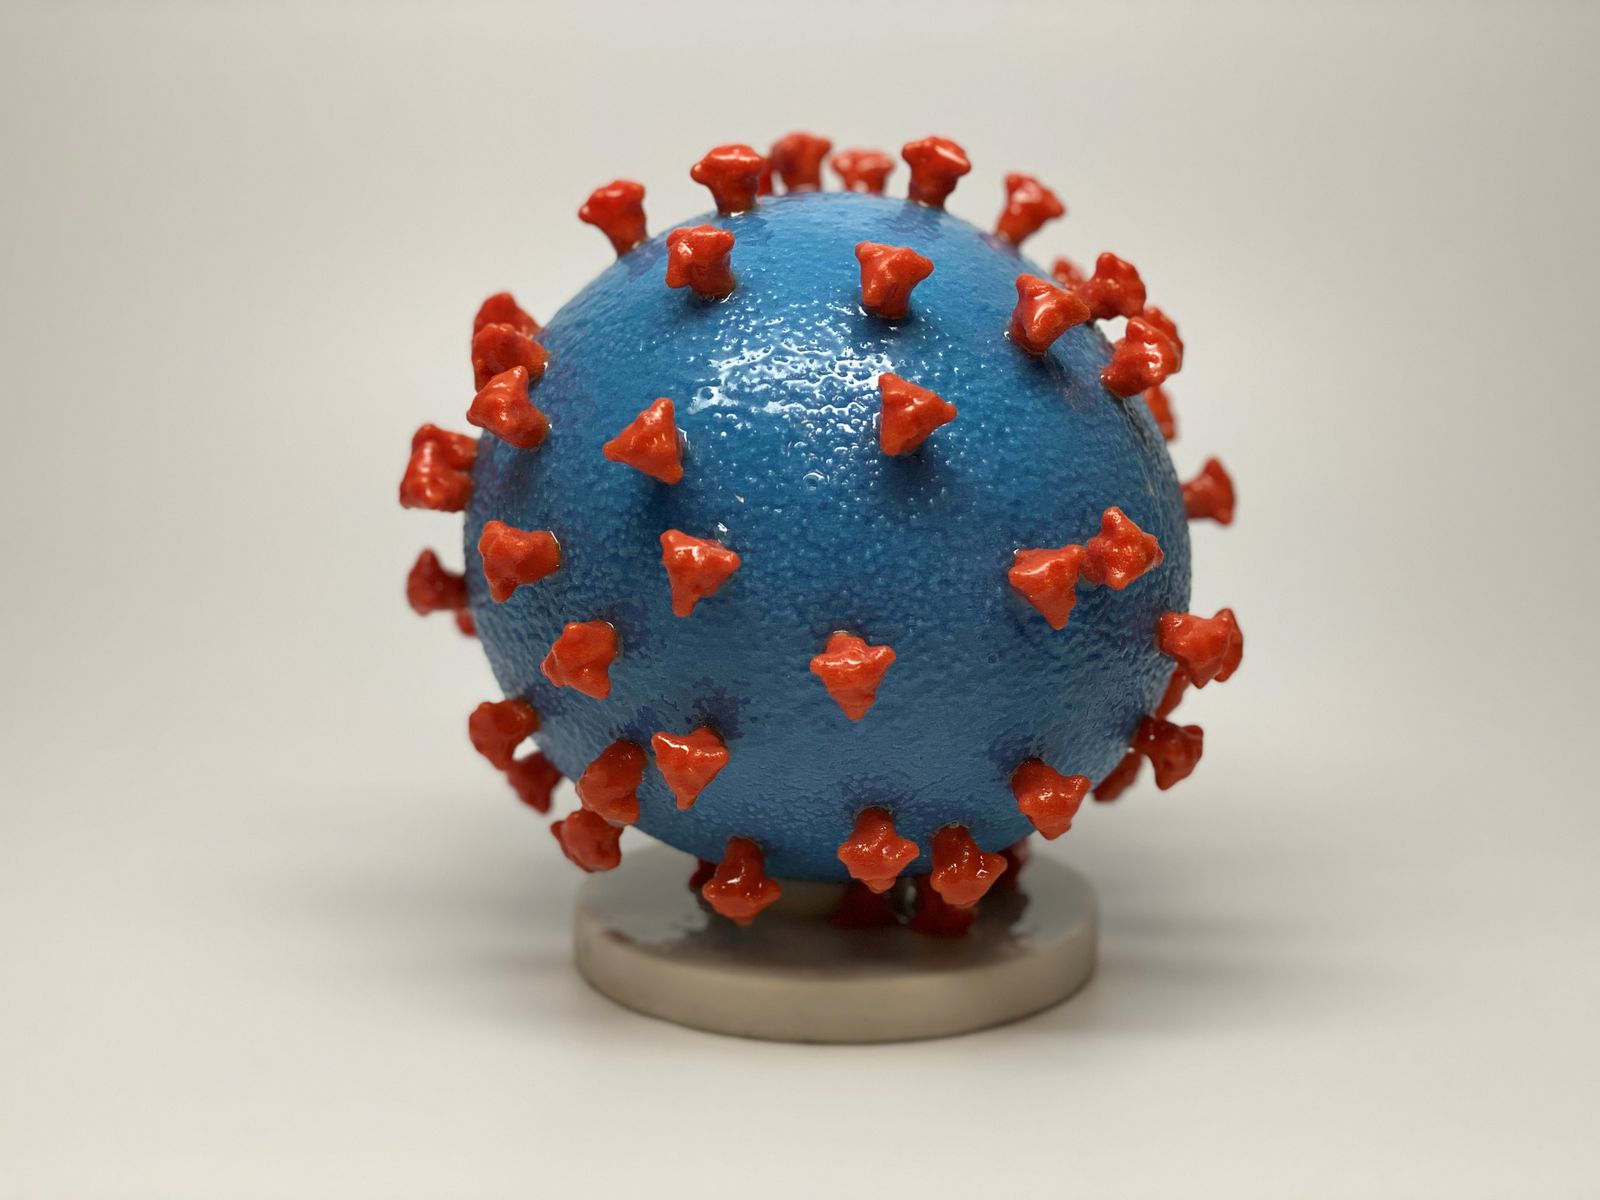 جزيئيات من فيروس كورونا المستجد مطبوعة بتقنية الطباعة ثلاثية الأبعاد - REUTERS